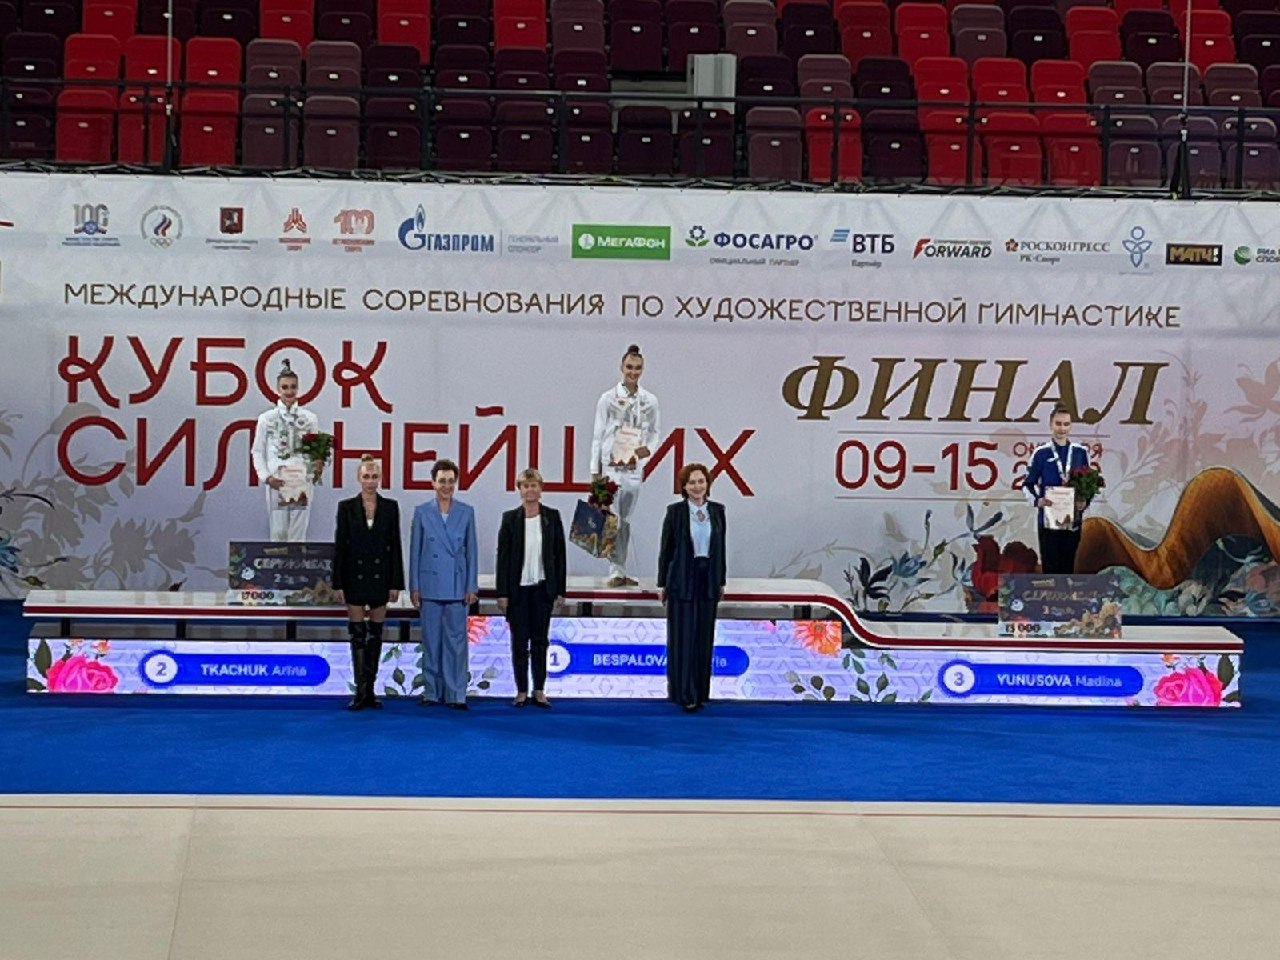 Ульяновская спортсменка взяла золотую медаль по художественной гимнастике на «Кубке сильнейших»